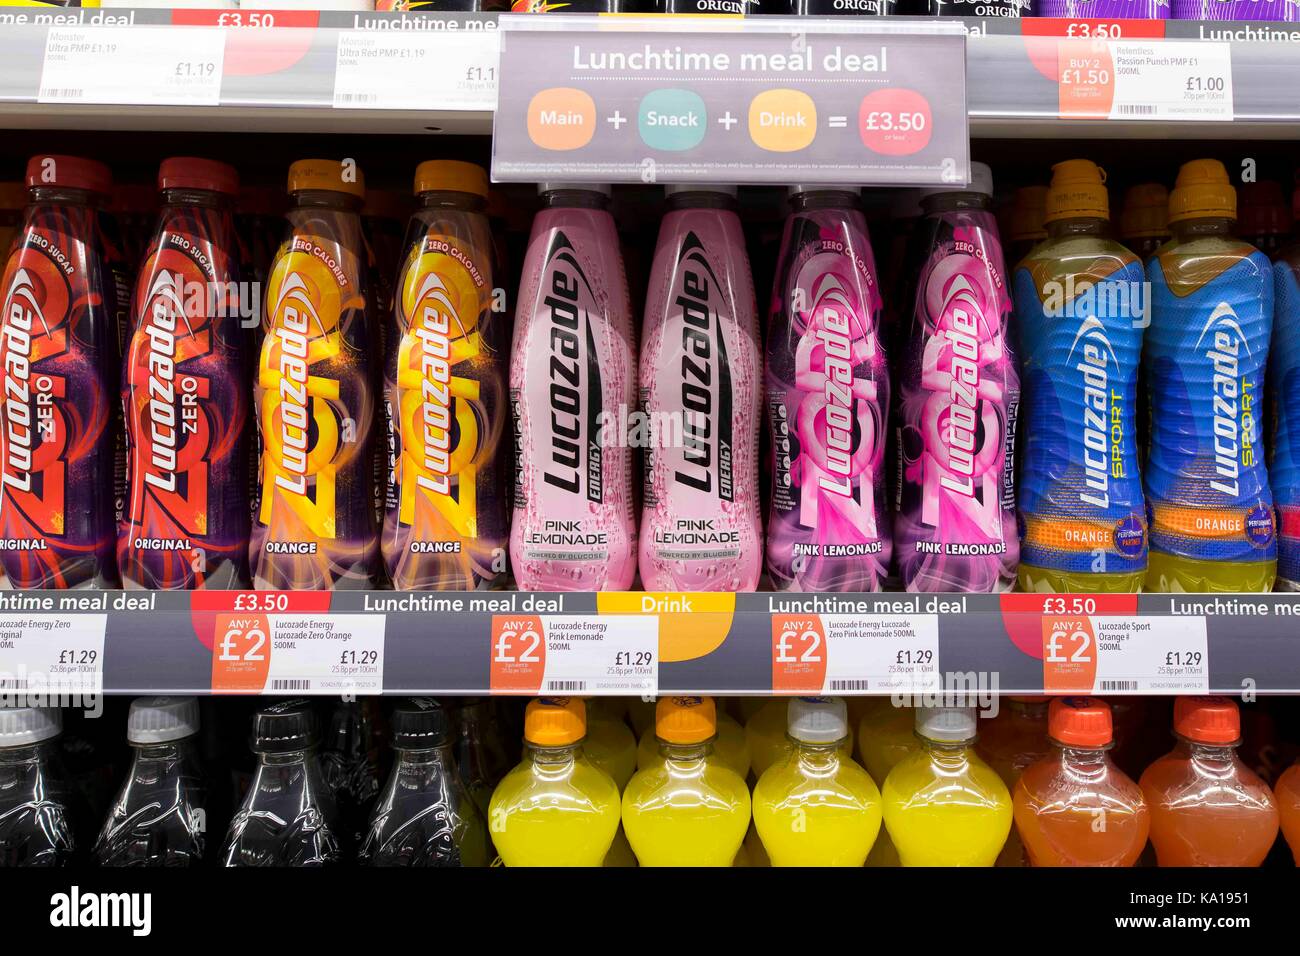 Des boissons gazeuses sur l'affichage sur une étagère de supermarché. Banque D'Images